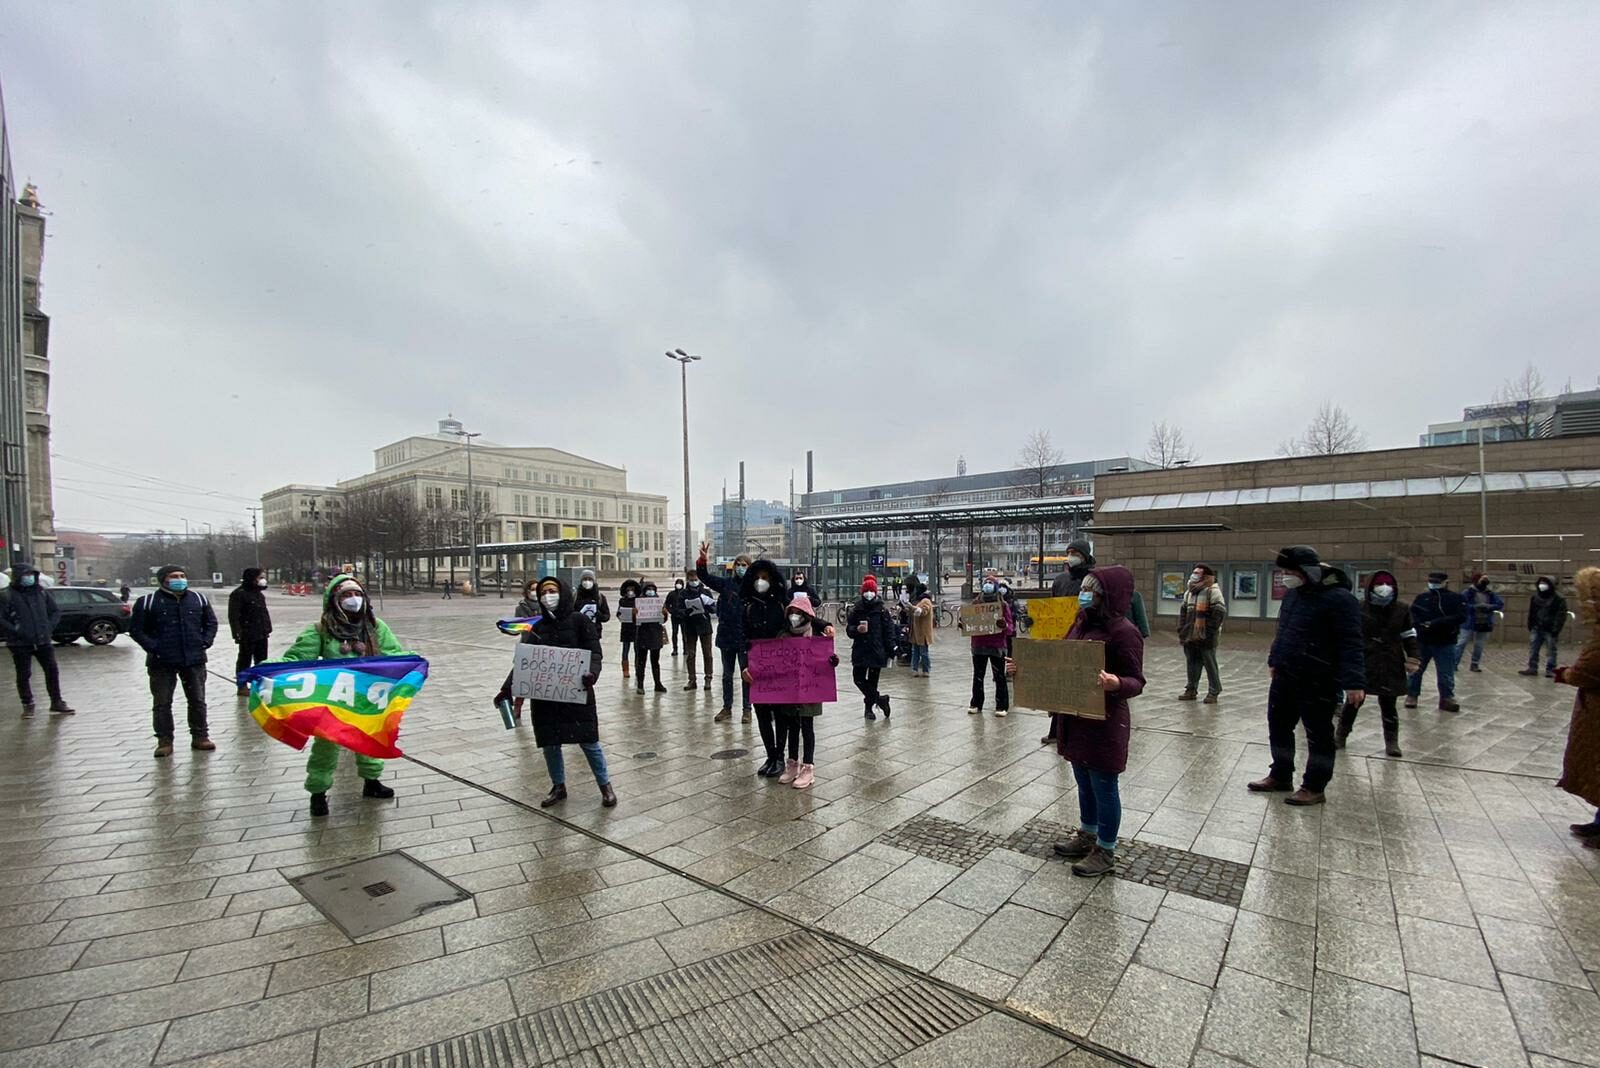   Kampf gegen Faschismus | Eine Kundgebung zeigt Solidarität mit Studierenden und Personal der Boğaziçi Universität  